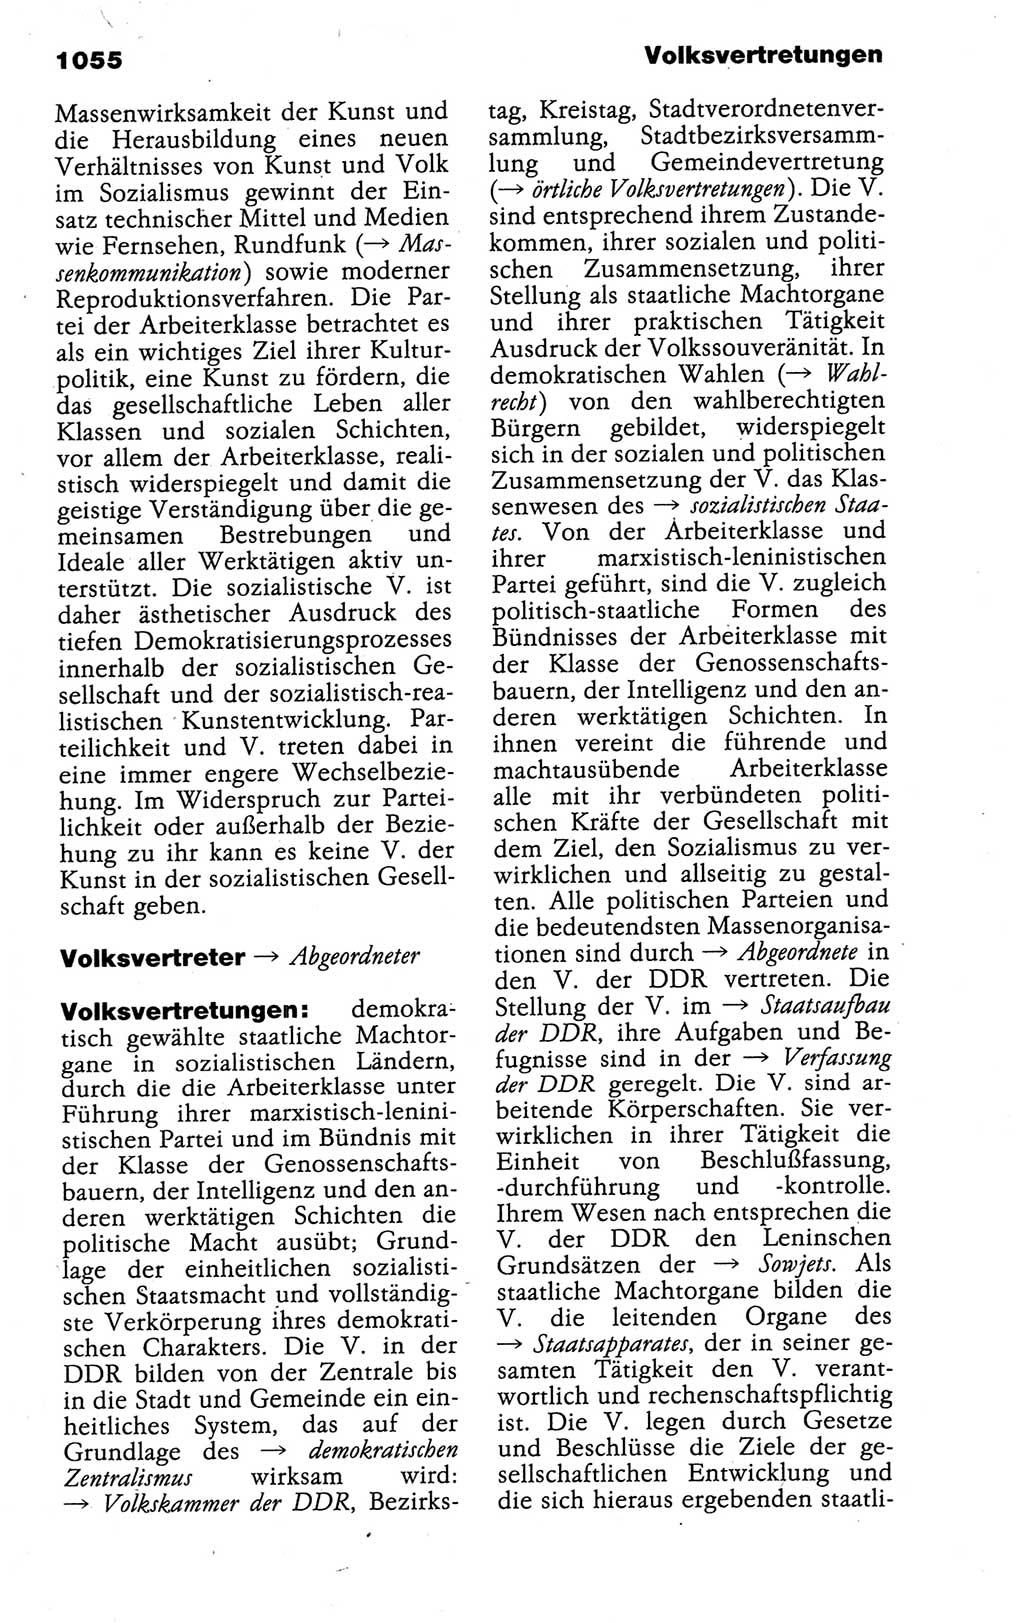 Kleines politisches Wörterbuch [Deutsche Demokratische Republik (DDR)] 1988, Seite 1055 (Kl. pol. Wb. DDR 1988, S. 1055)